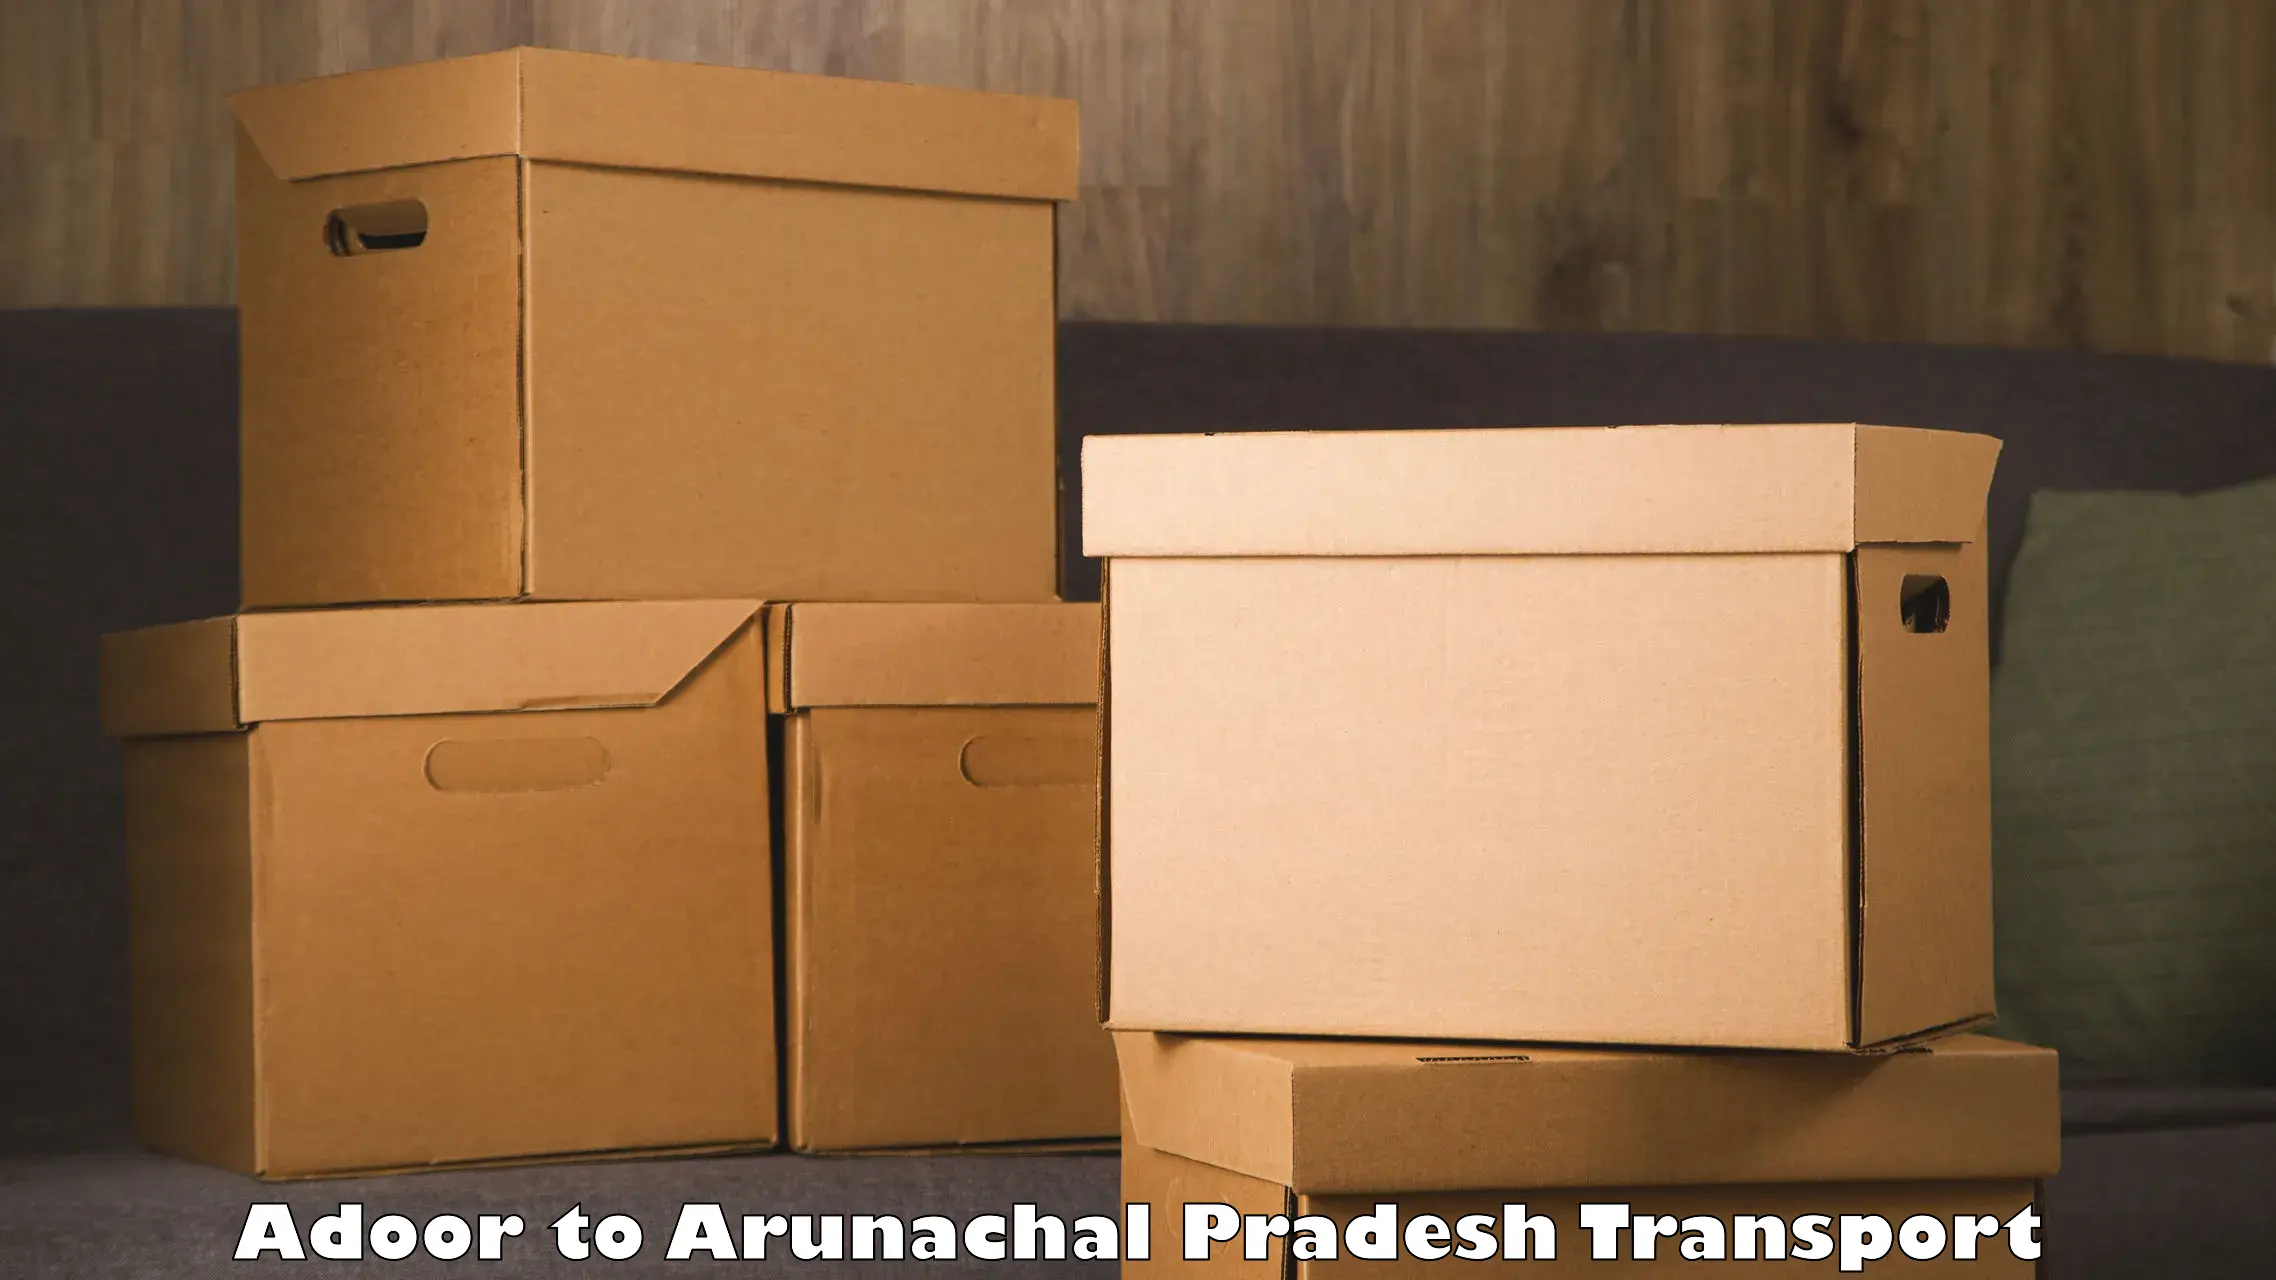 Transport shared services Adoor to Arunachal Pradesh